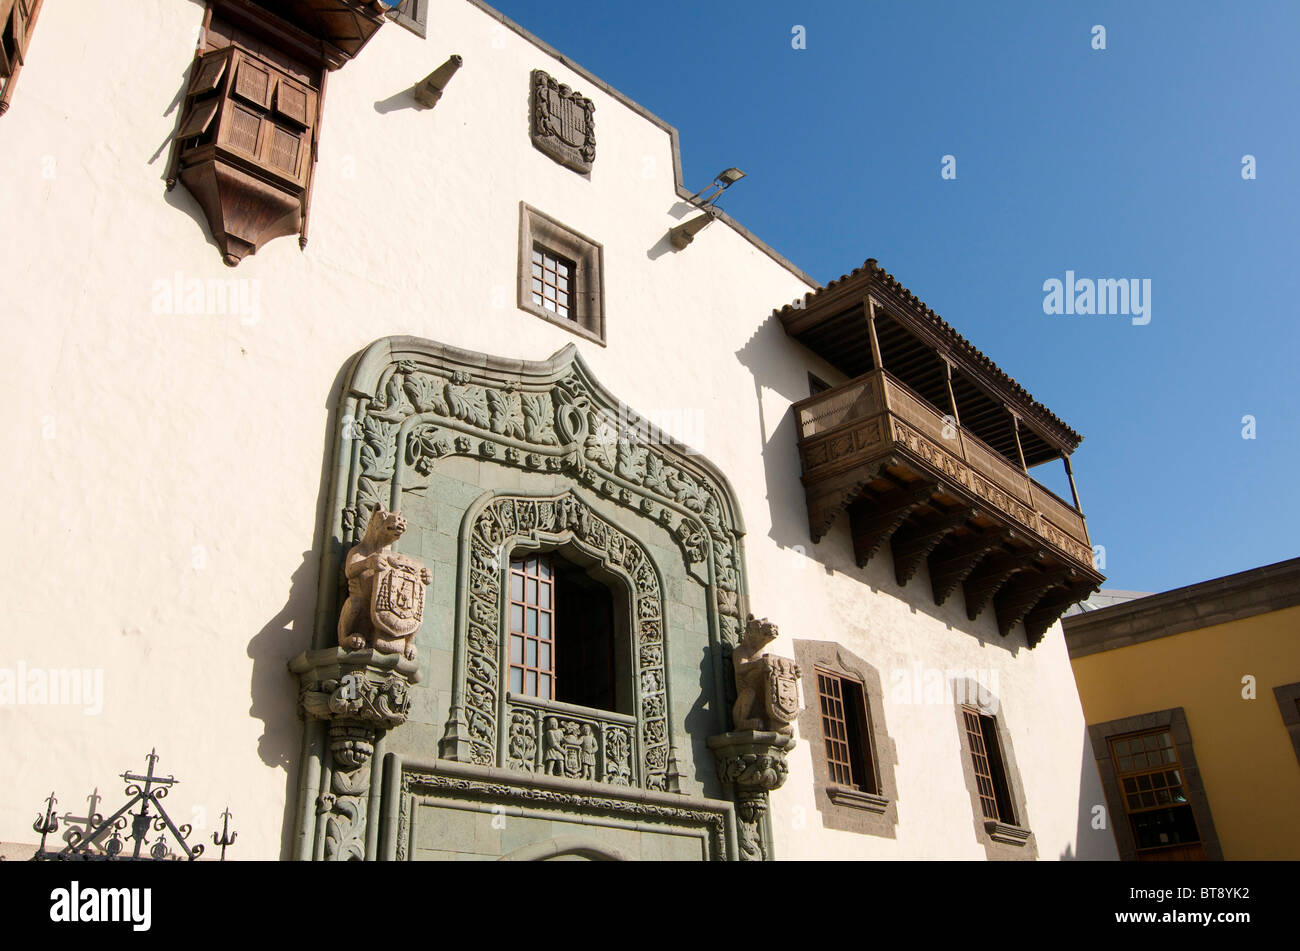 Casa de Colon, Las Palmas, Grand Canary, Canary Islands, Spain Stock Photo